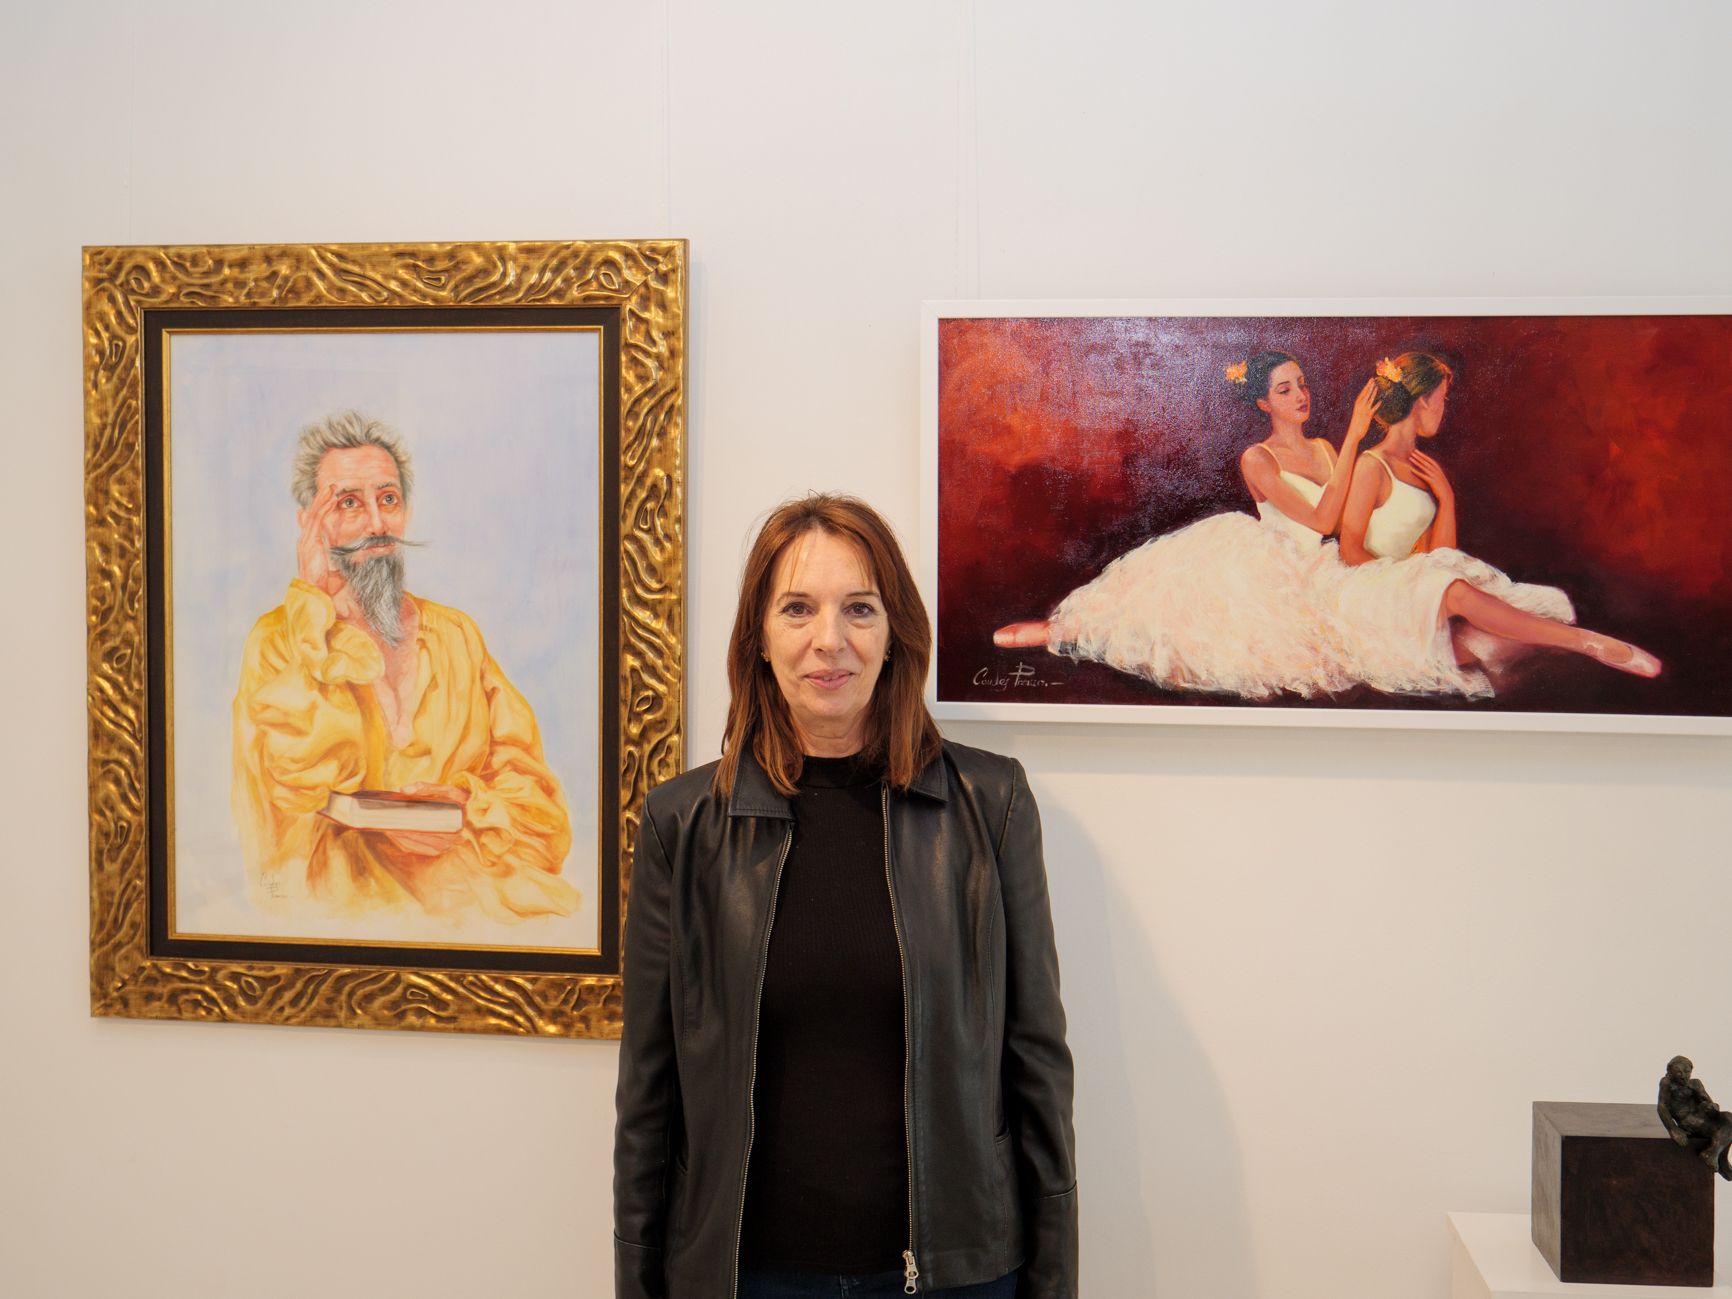 La artista Lucía Condés Pizarro entre dos cuadros representativos de la obra pictórica que ha traído a la galería Alemi. | VICENTE GARCÍA